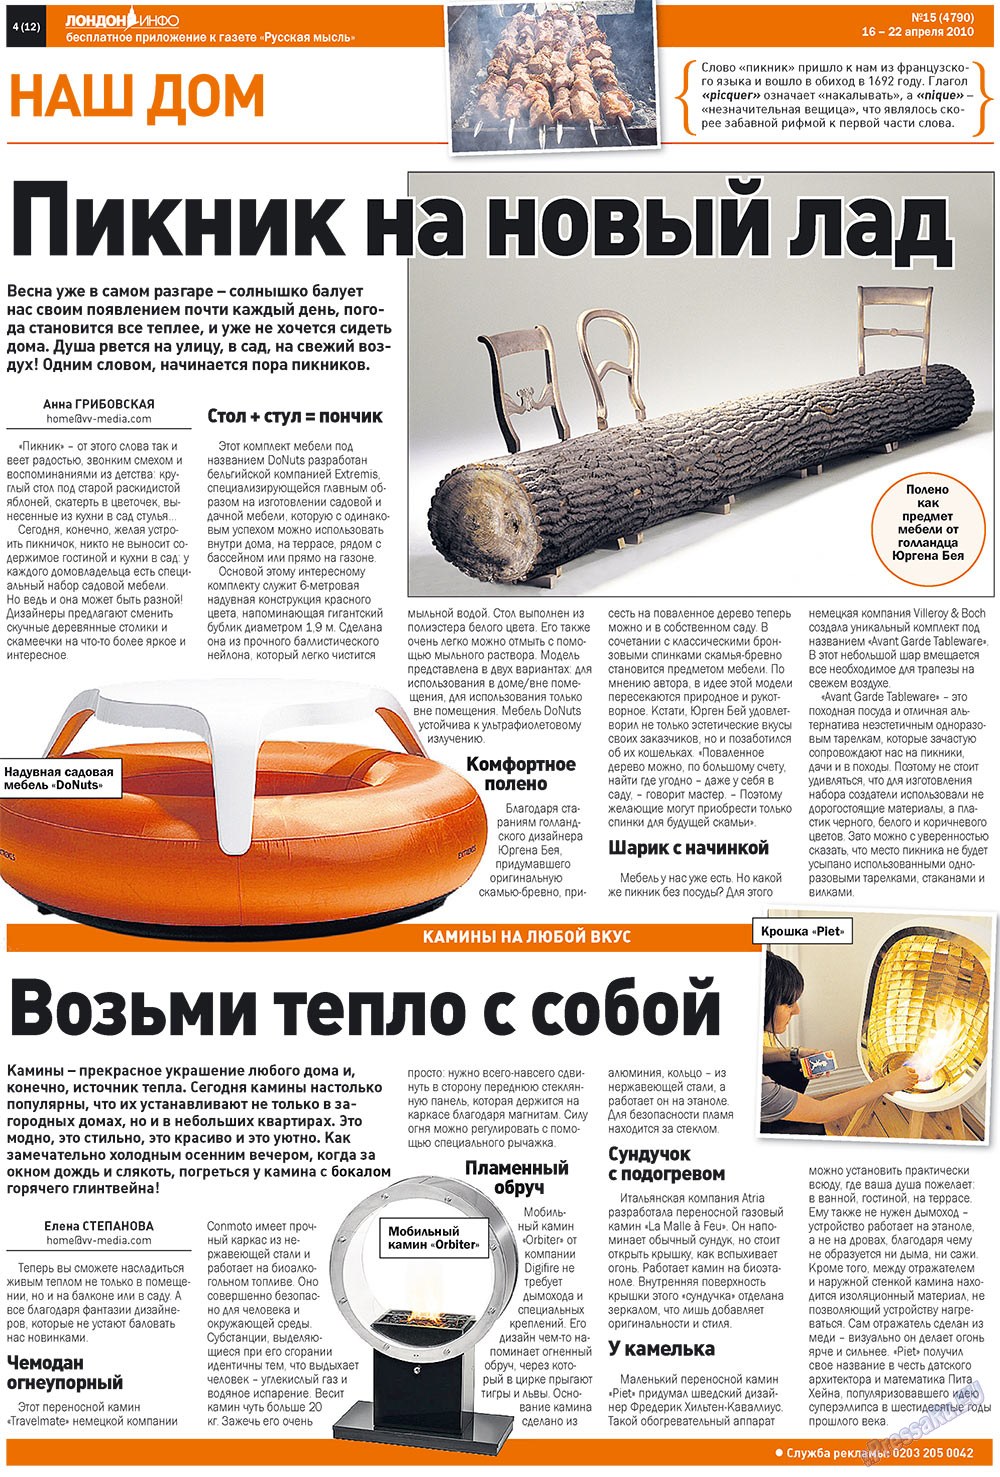 Русская Мысль (газета). 2010 год, номер 15, стр. 20